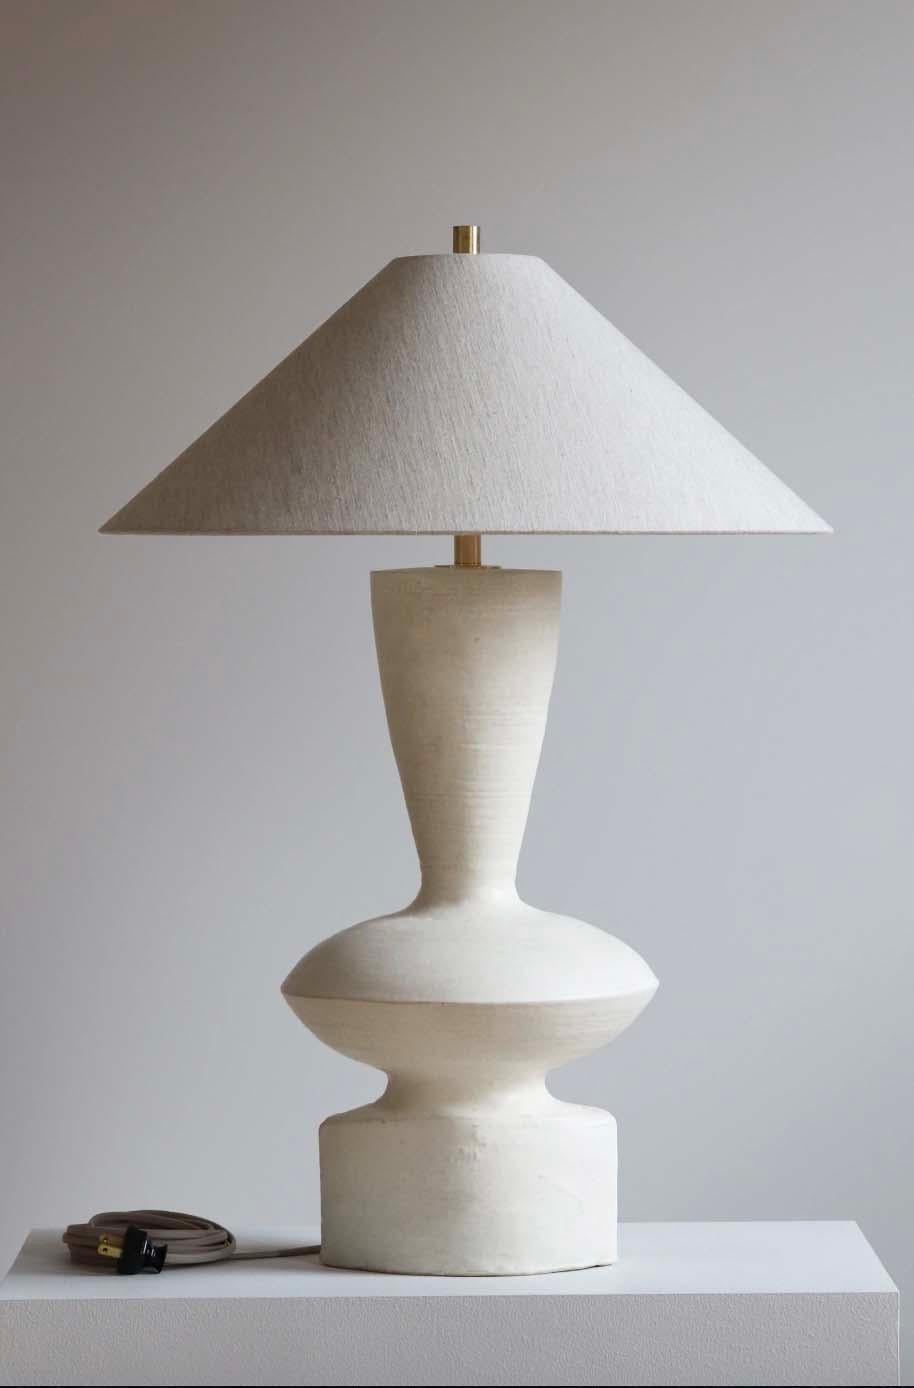 Die Lampe Luna ist eine handgefertigte Studiotöpferei des Keramikkünstlers Danny Kaplan. Inklusive Lampenschirm. Bitte beachten Sie, dass die genauen Abmessungen variieren können.

Geboren in New York City und aufgewachsen in Aix-en-Provence,